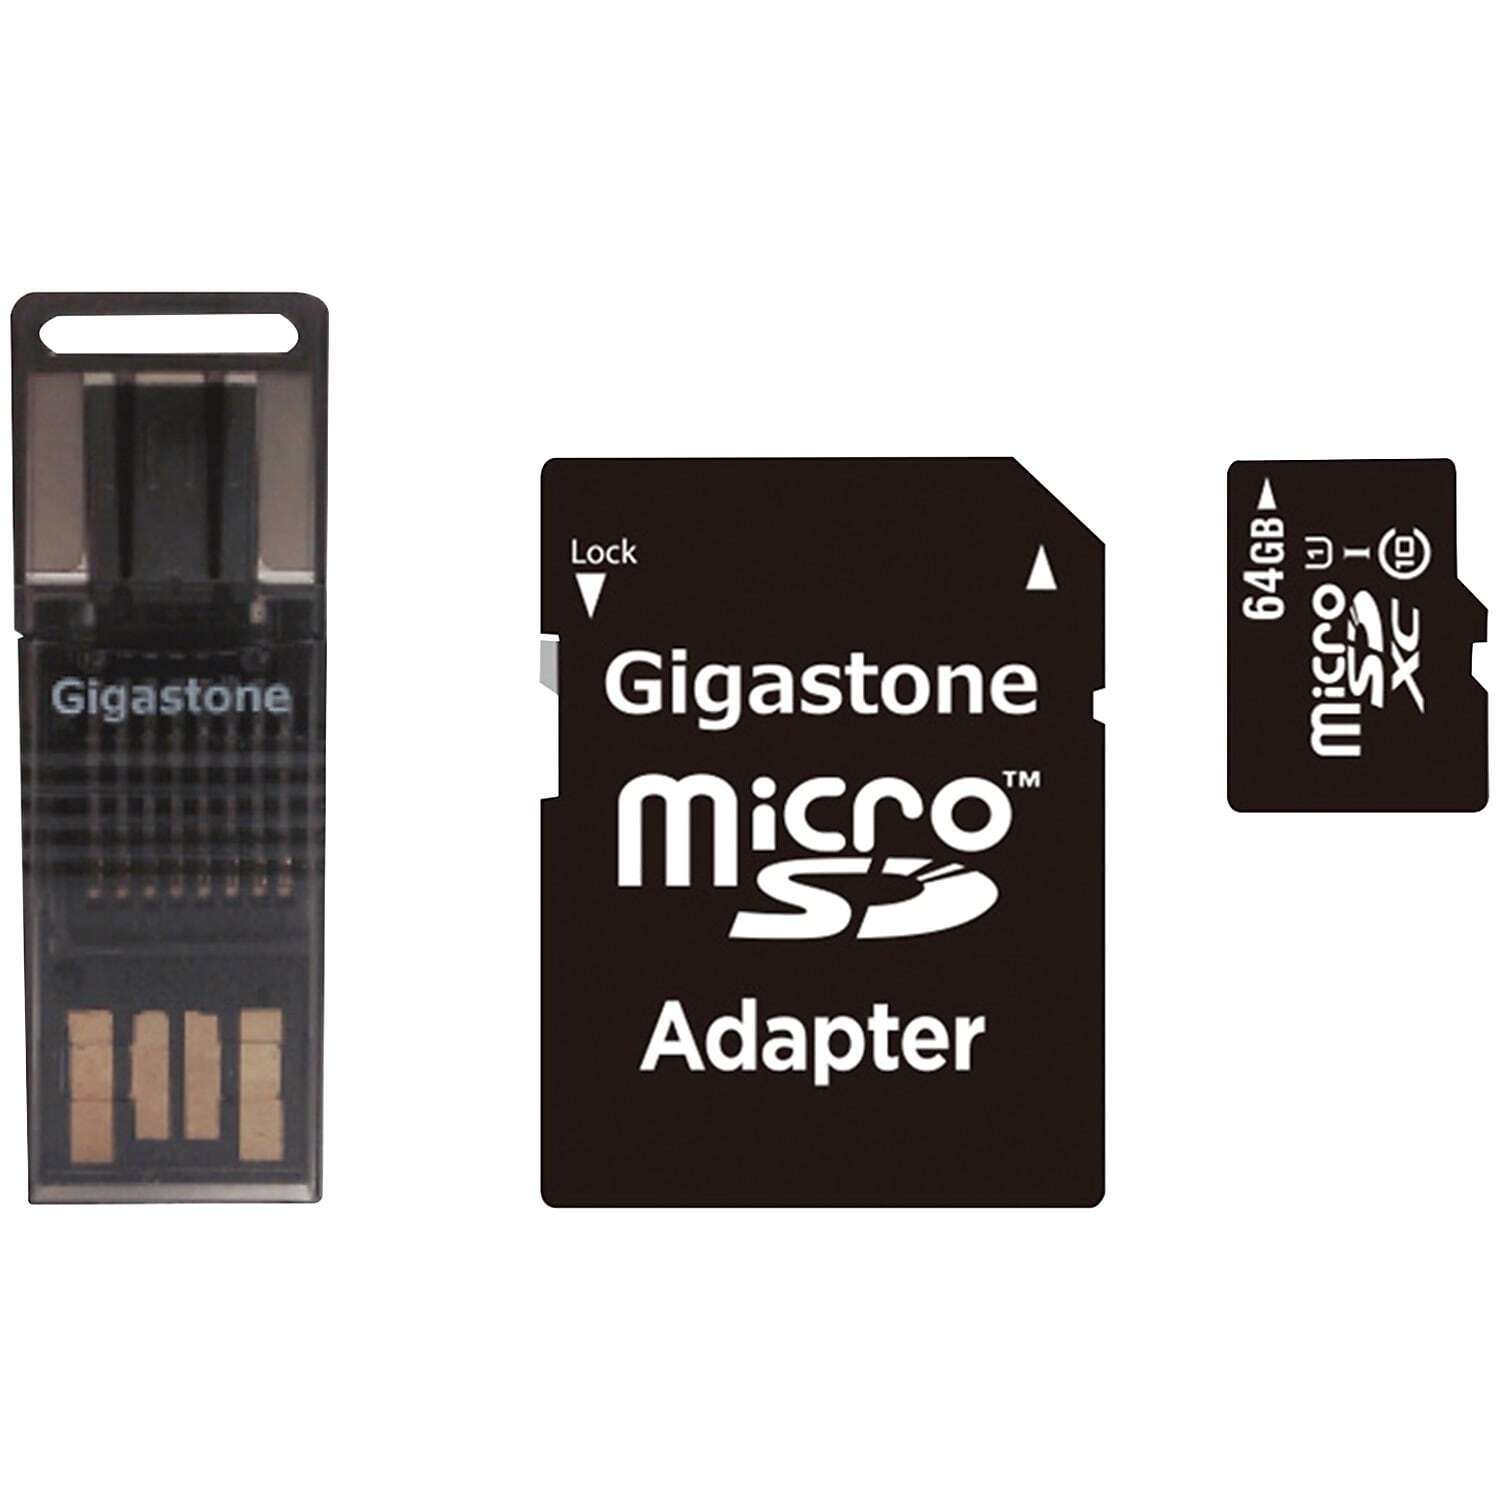 Gigastone Prime Series microSD Card 4-in-1 Kit GIGS4IN164GBR